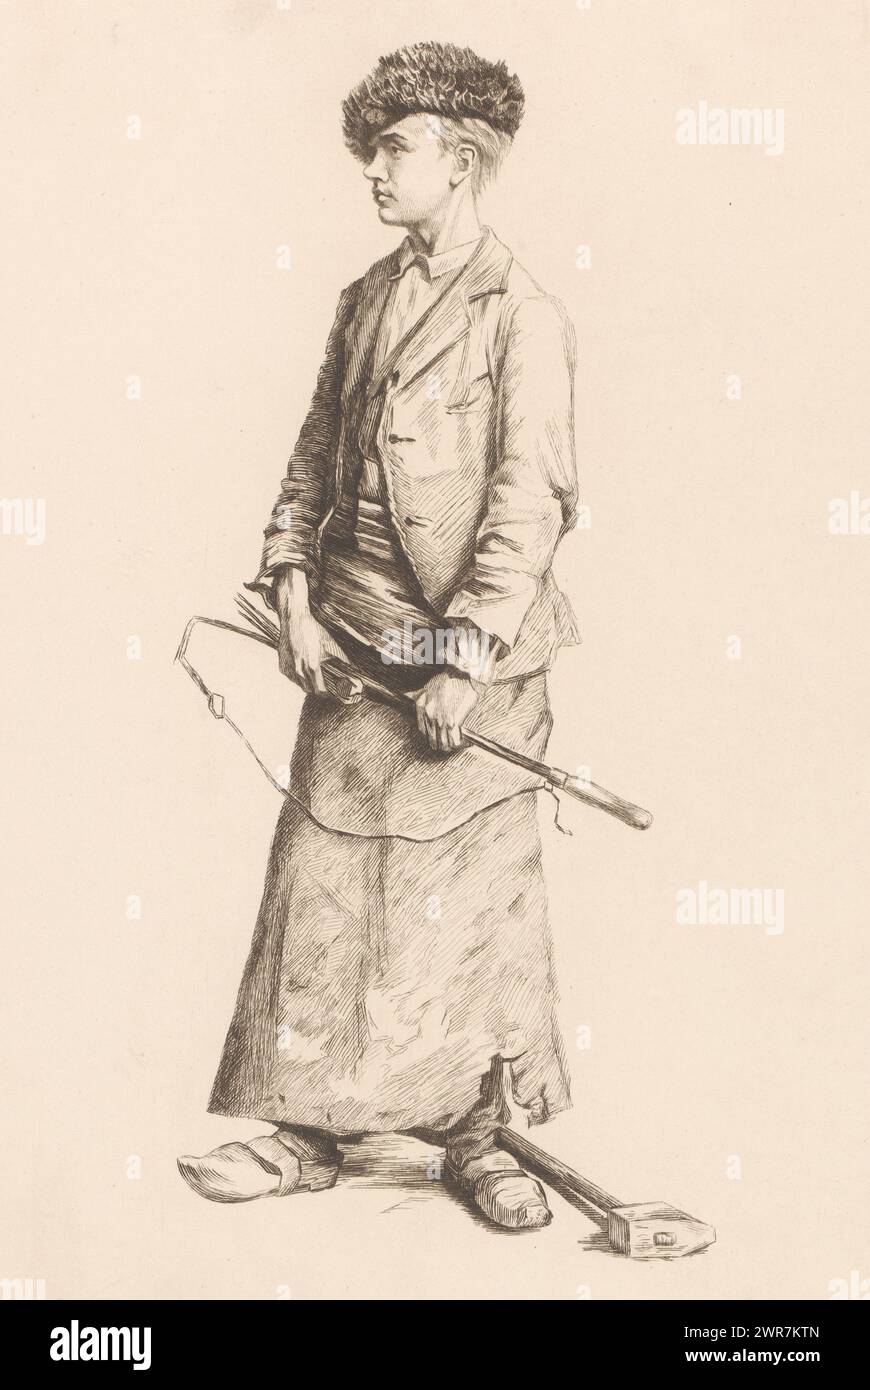 Fabbro, tipografo: Auguste Danse, (firmato dall'artista), 1882, carta, incisione, punto a secco, altezza 318 mm x larghezza 237 mm, stampa Foto Stock